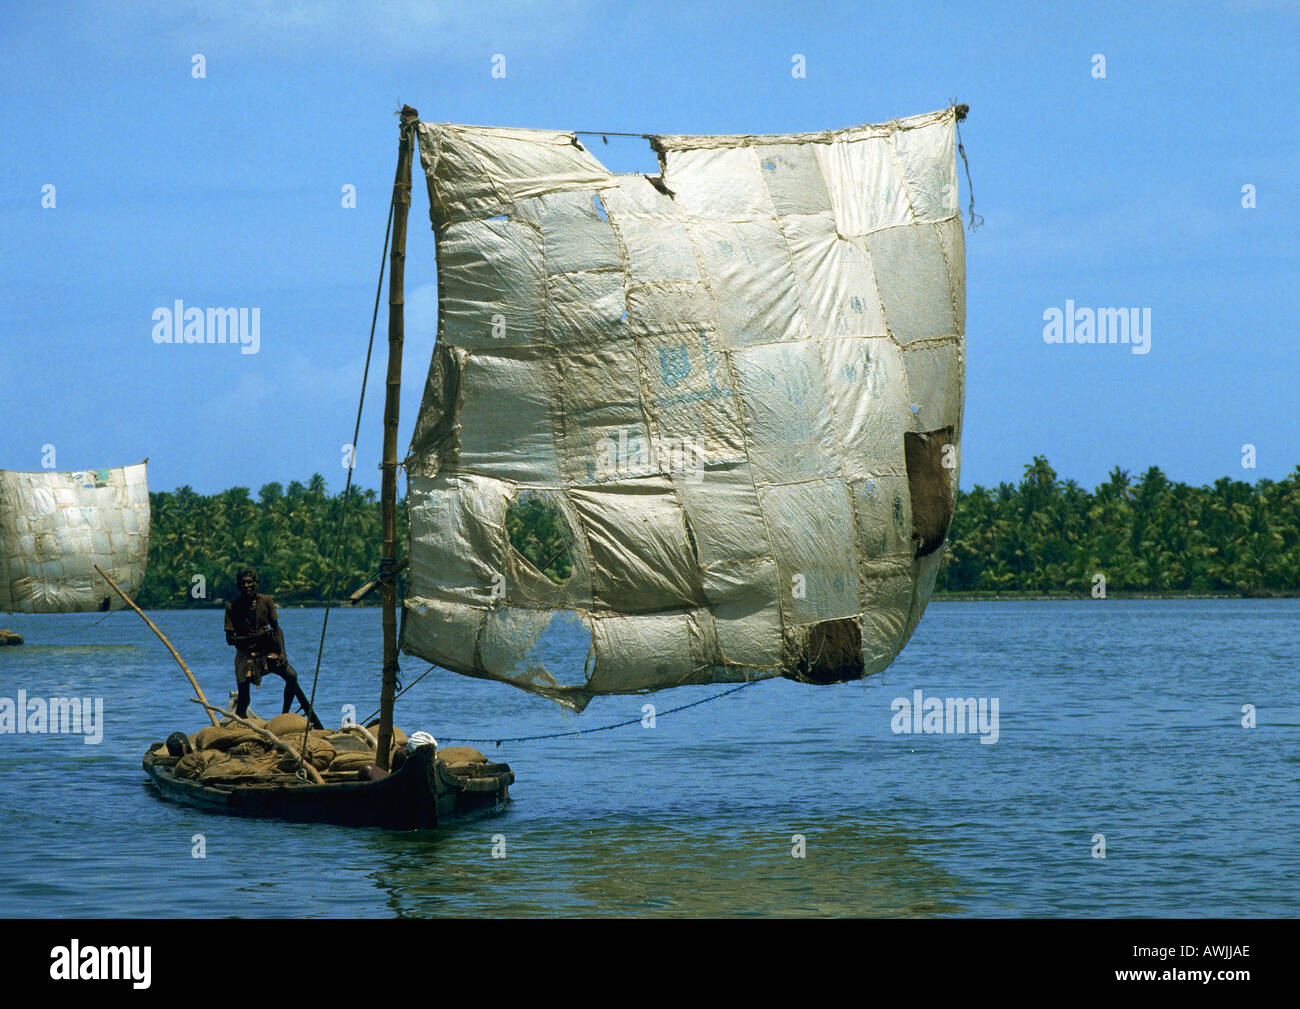 Indien, Person auf Floß mit Patchwork Segel Stockfotografie - Alamy